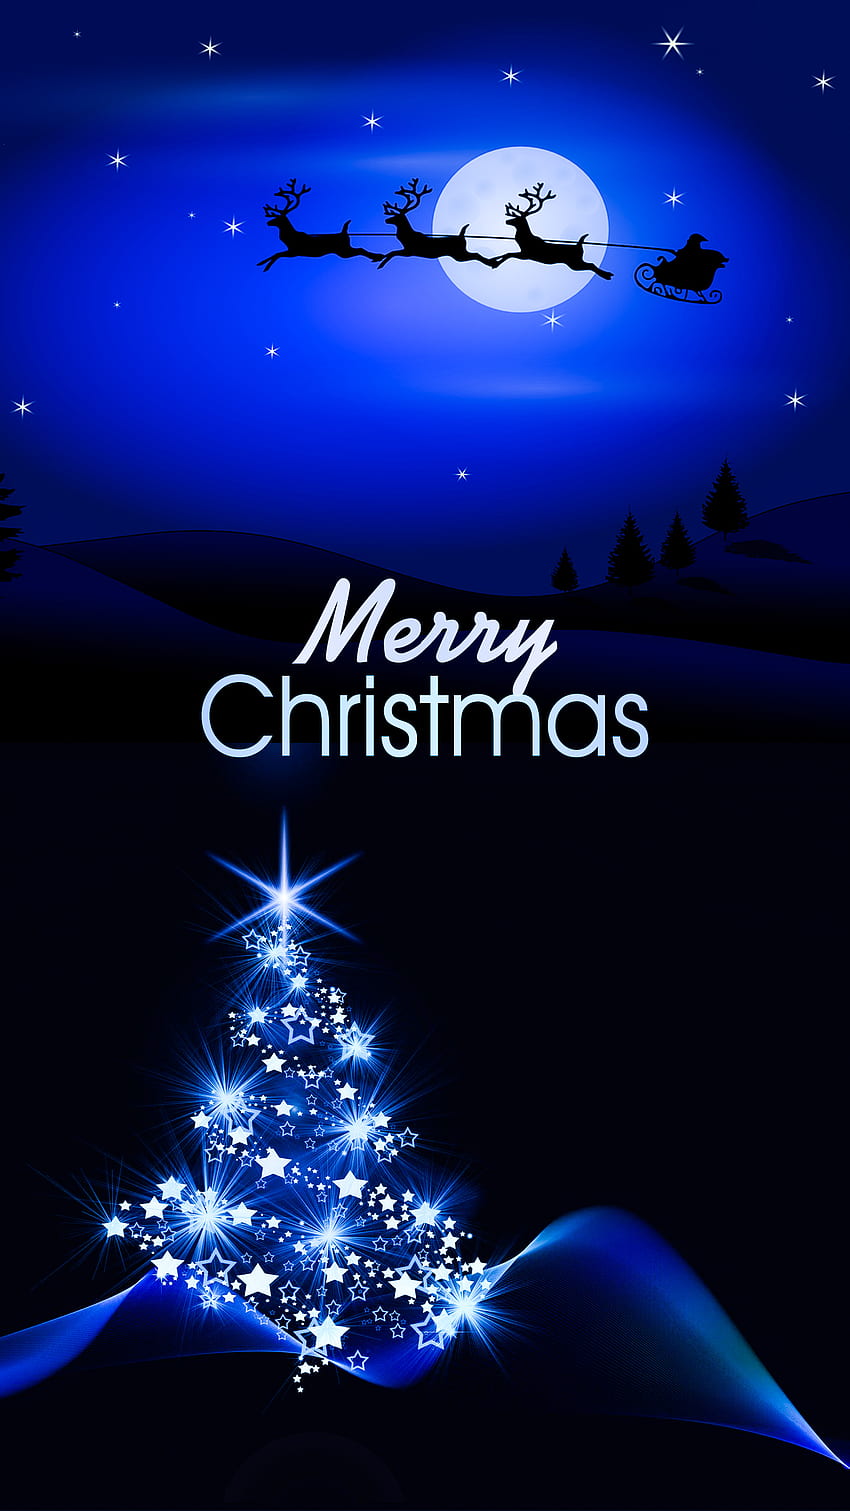 Những hình ảnh về ông già Noel, cây thông Giáng sinh và đêm noel lộng lẫy sẽ khiến bạn cảm thấy được yêu thương đến từ những người xung quanh mình. Hãy cùng nhau đón một mùa Giáng sinh tràn đầy niềm vui và tình yêu thương.